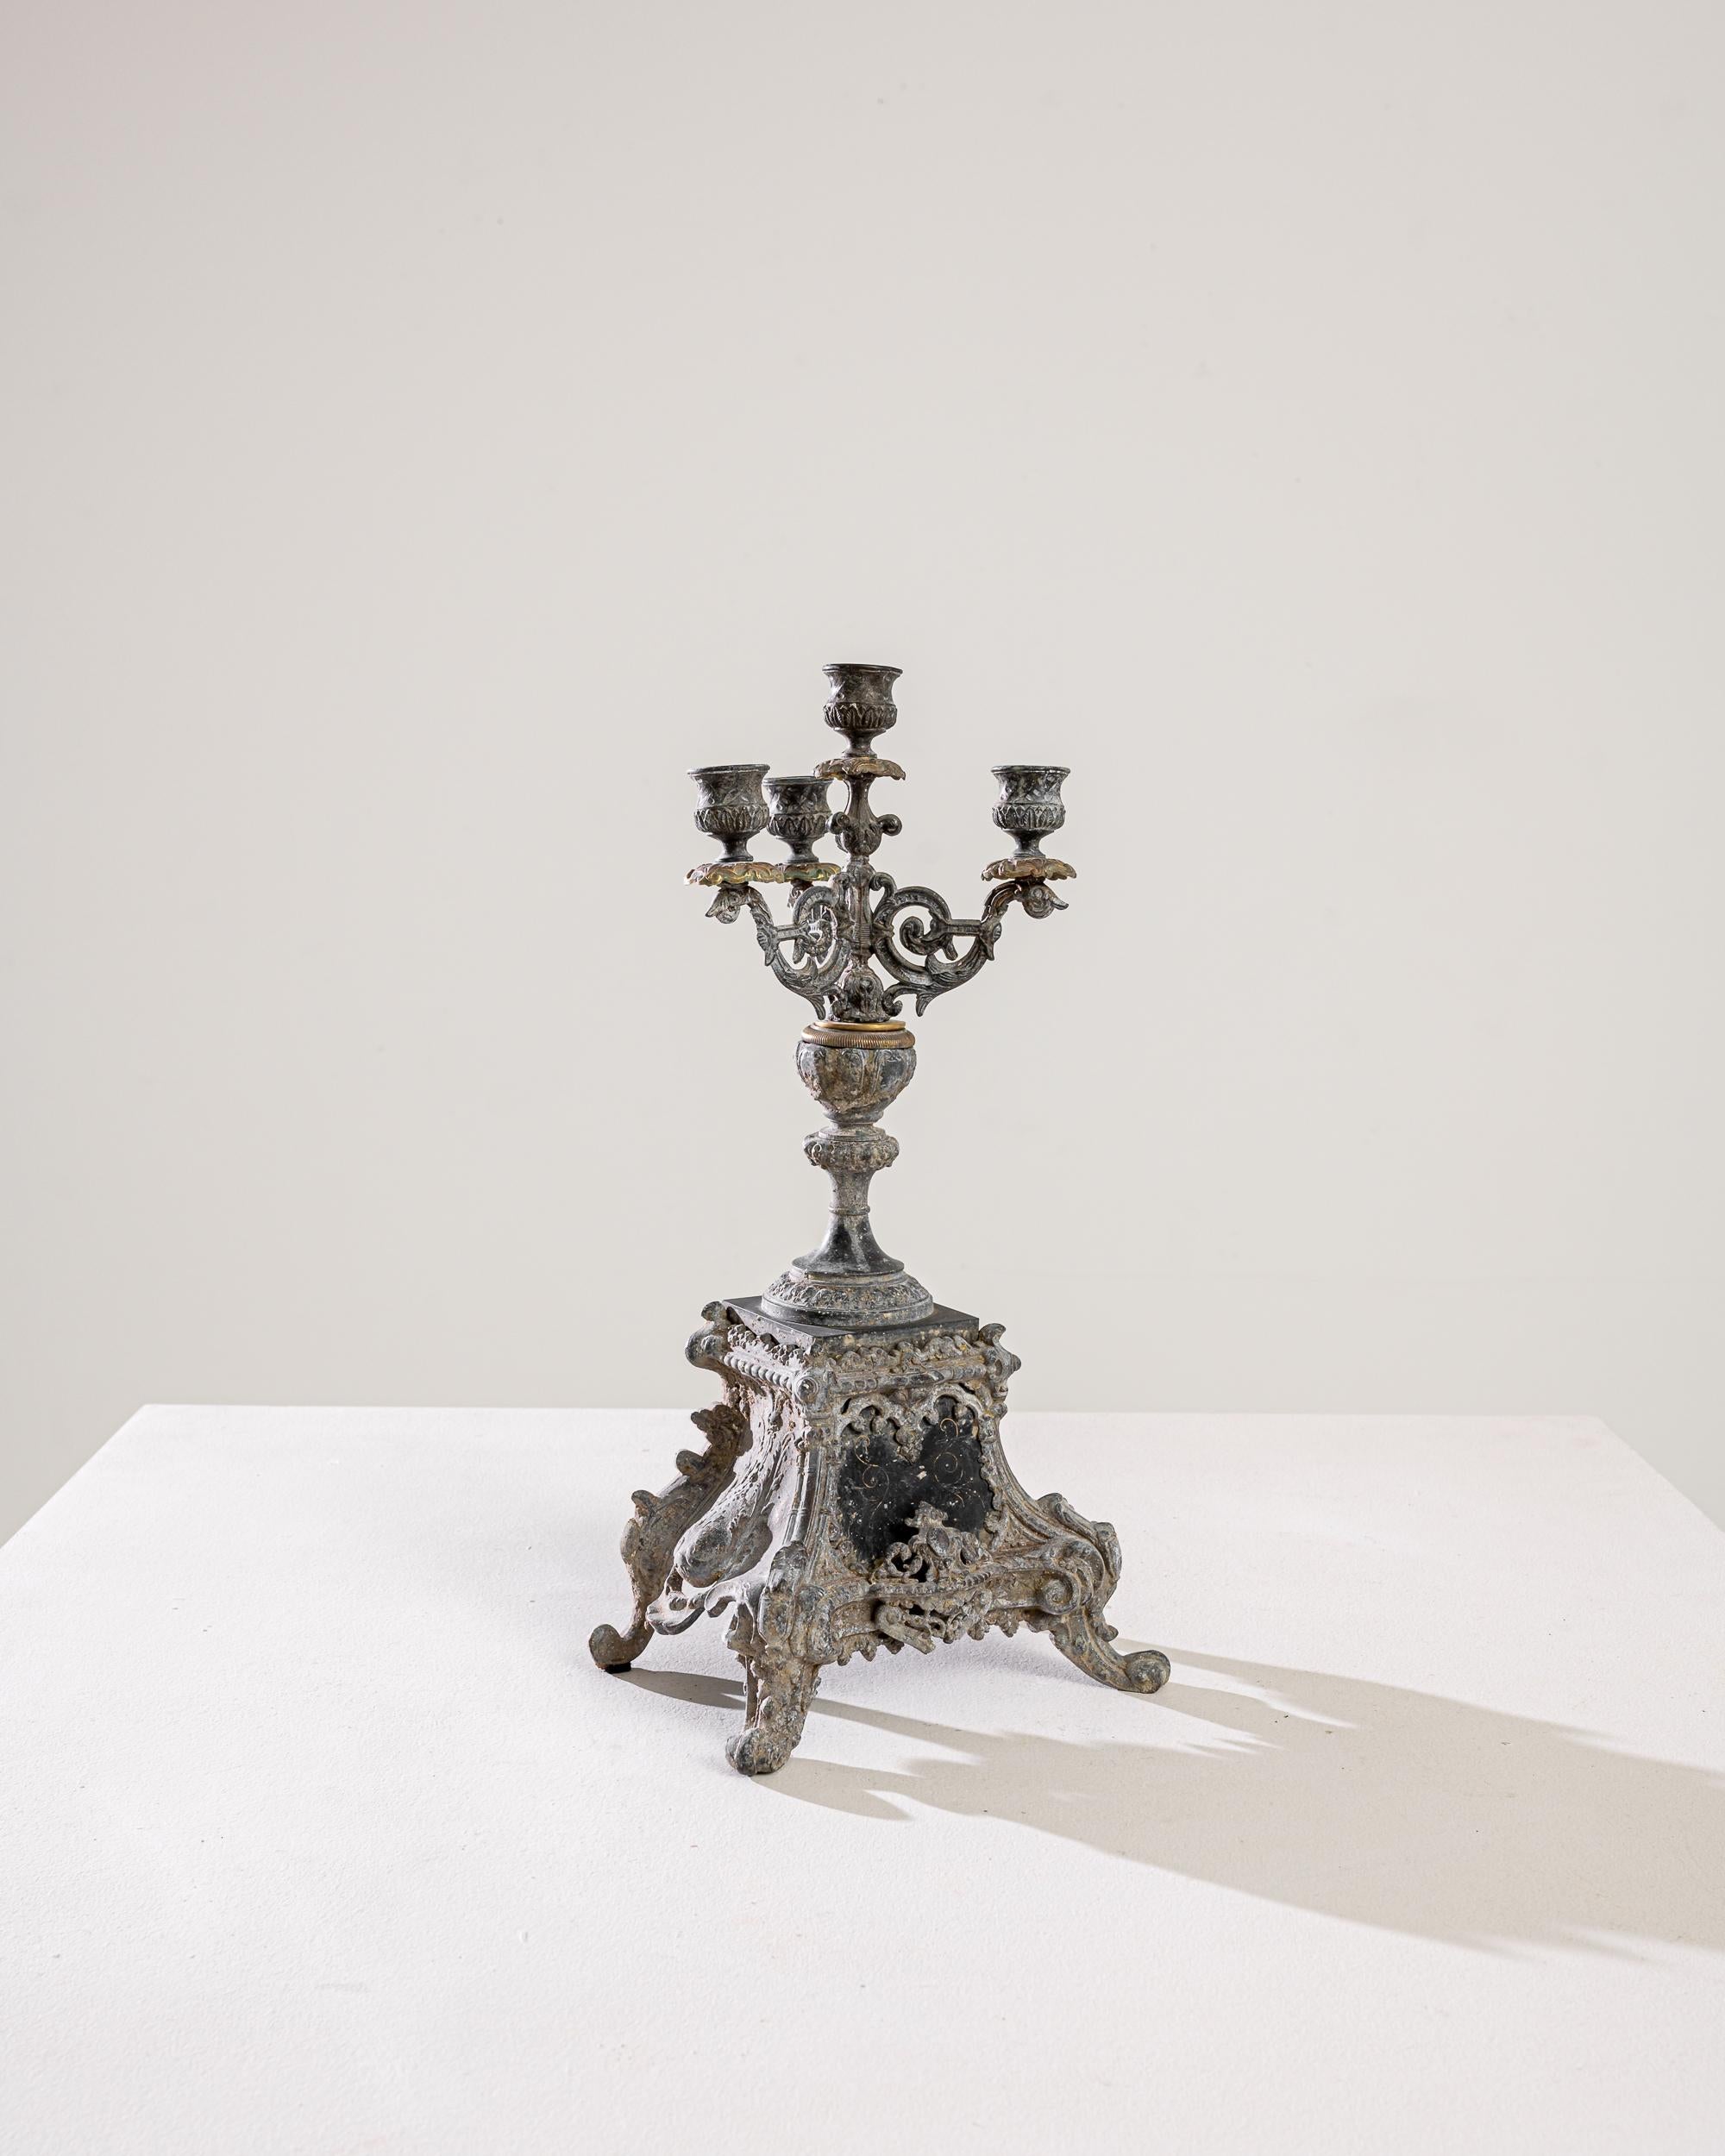 Lassen Sie sich vom Charme dieses französischen Metallleuchters aus dem 19. Jahrhundert verzaubern, einem Meisterwerk der Handwerkskunst, das die Zeit überdauert. Dieser Kerzenständer mit seinen kunstvollen Motiven auf dem Sockel strahlt einen Hauch